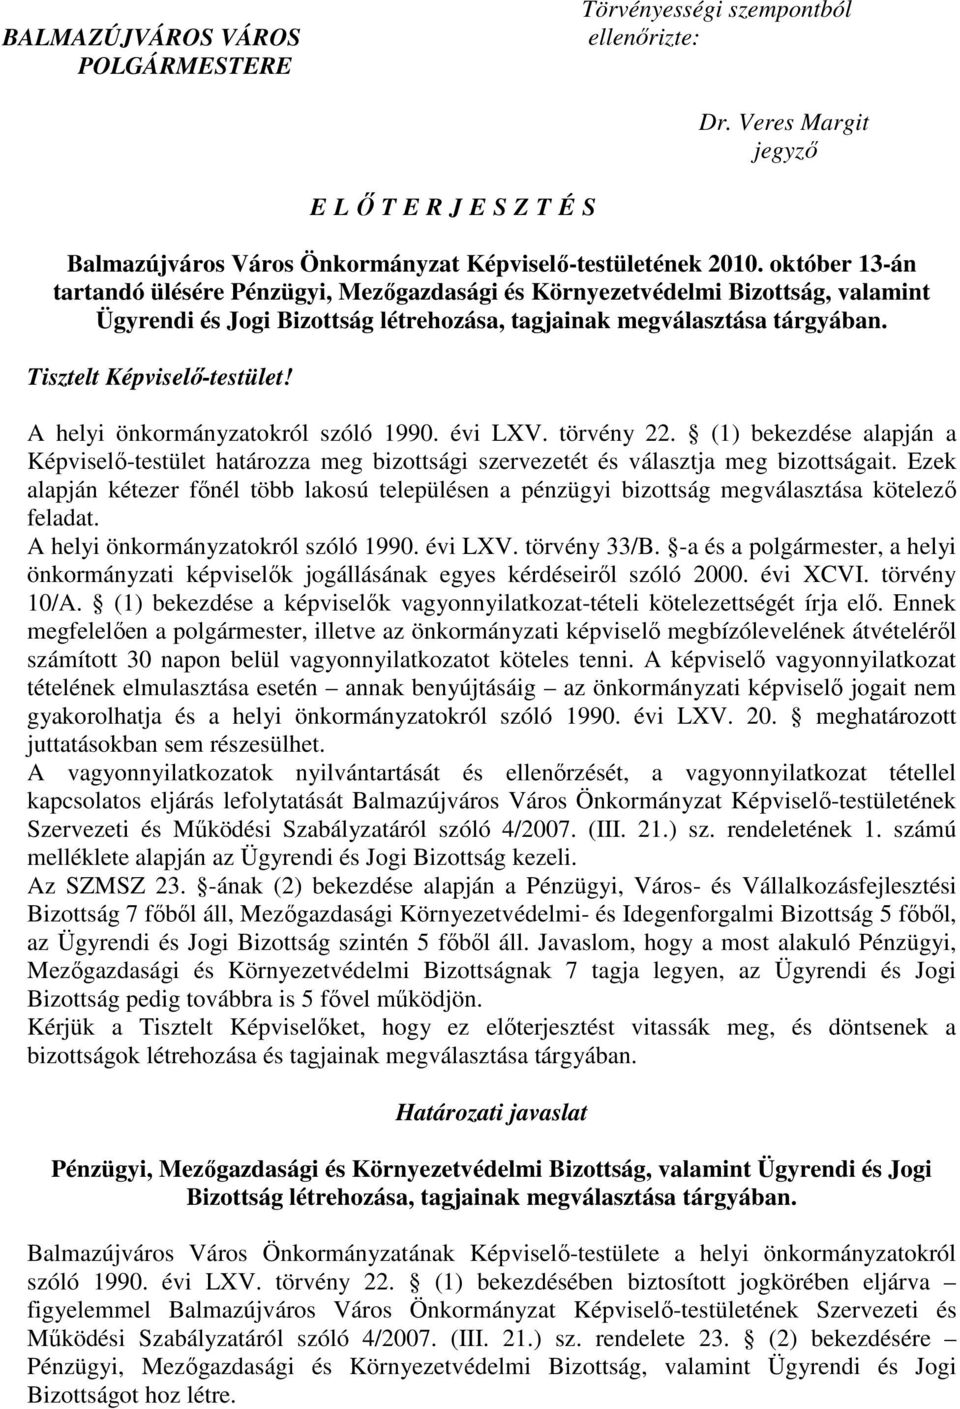 A helyi önkormányzatokról szóló 1990. évi LXV. törvény 22. (1) bekezdése alapján a Képviselı-testület határozza meg bizottsági szervezetét és választja meg bizottságait.